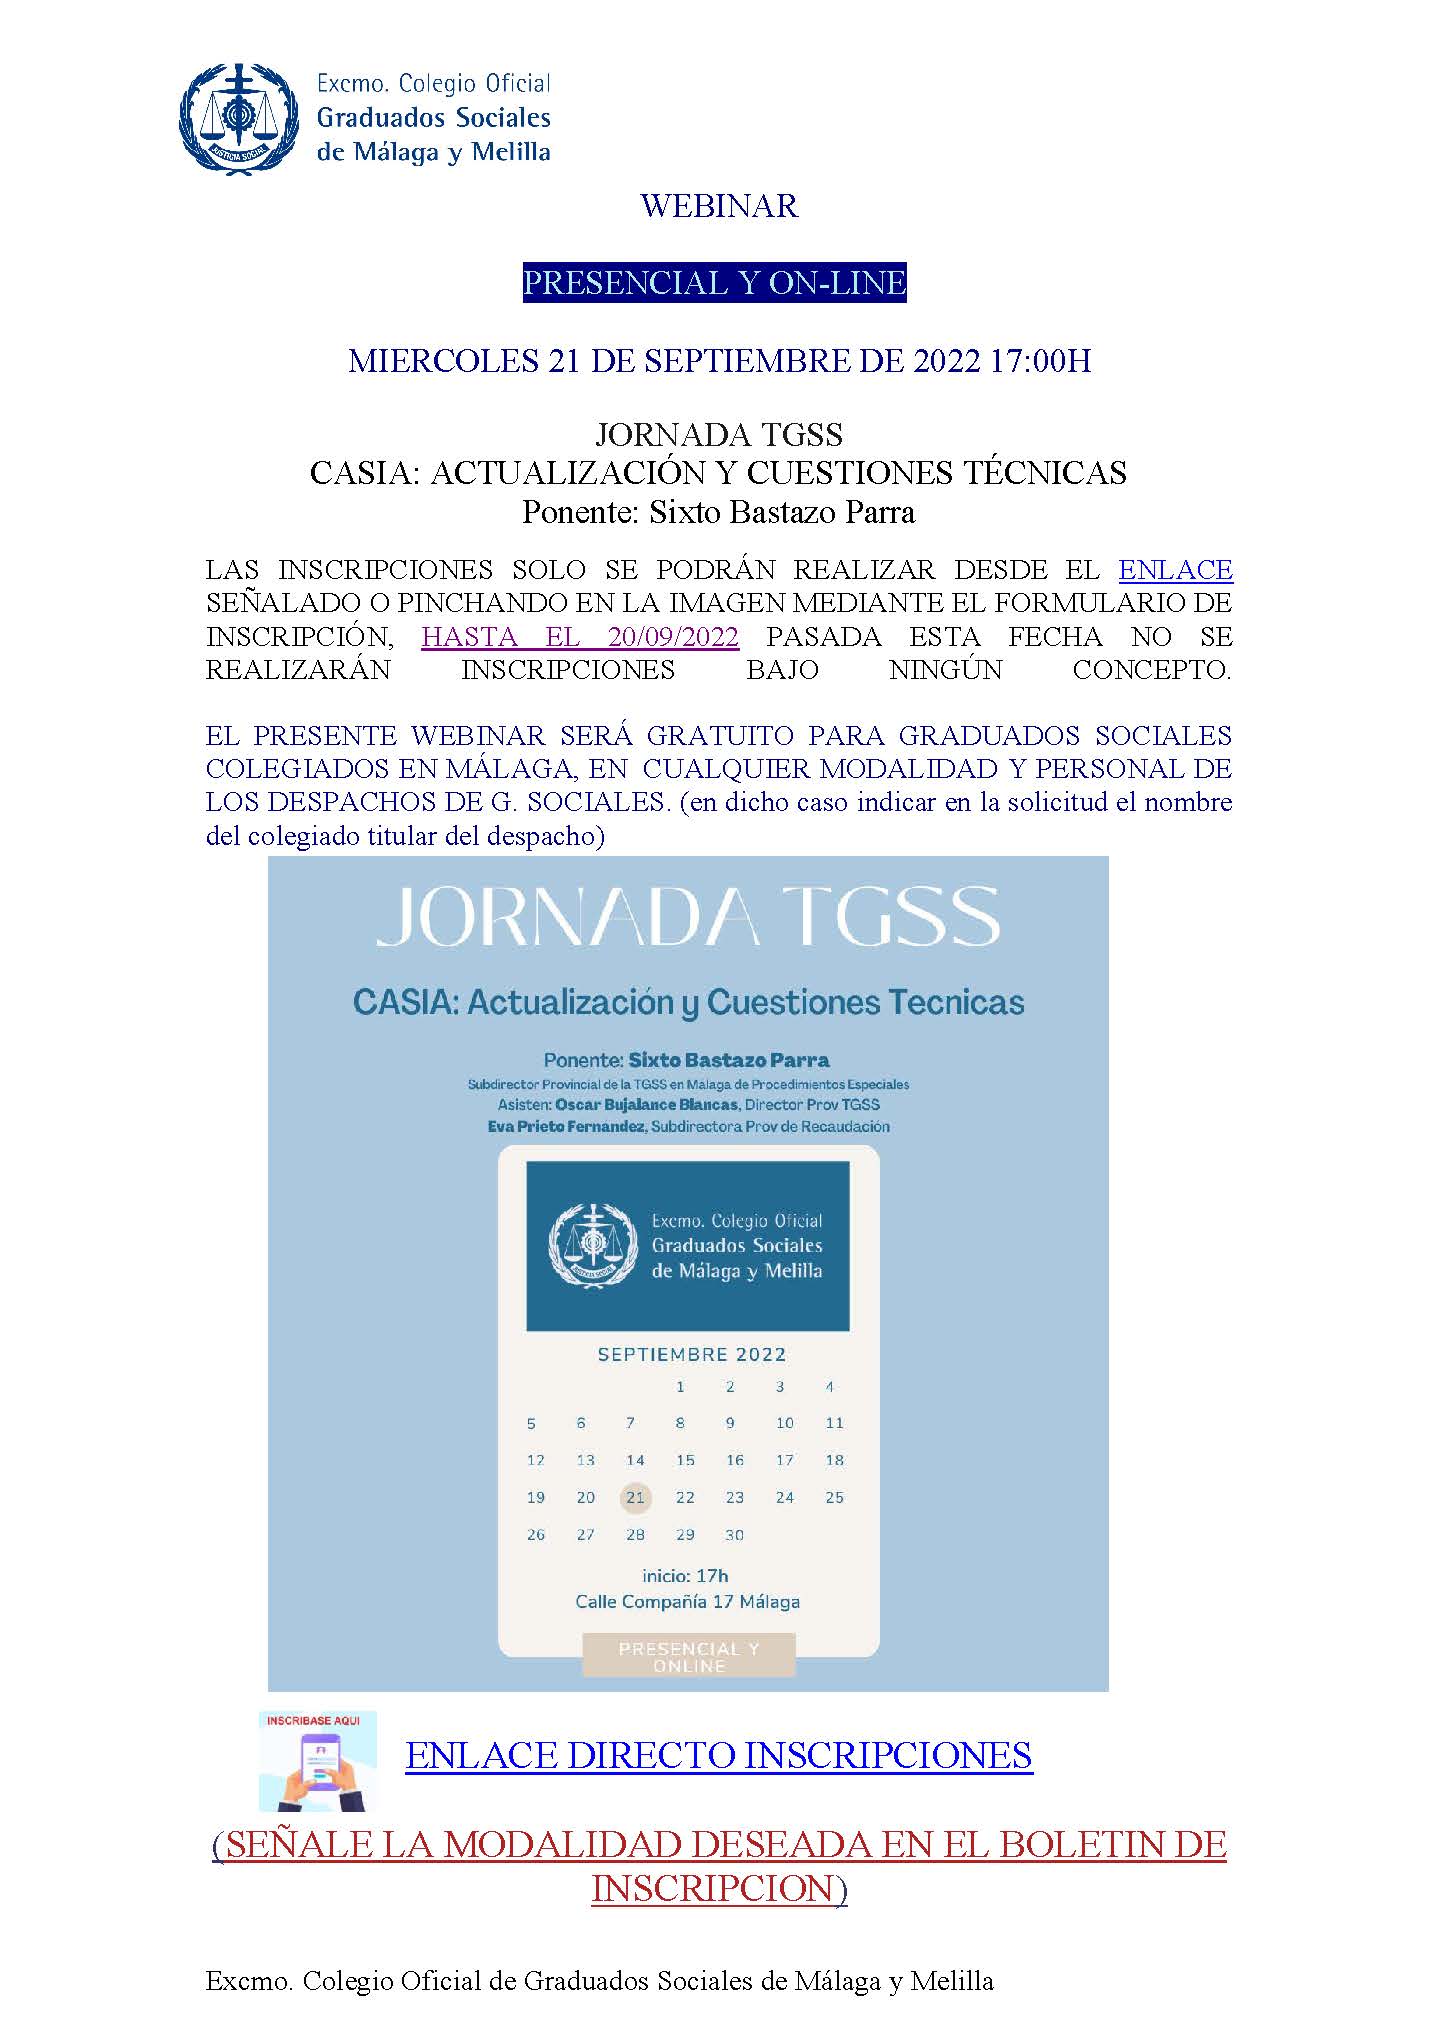 JORNADA TGSS CASIA ACTUALIZACION Y CUESTIONES TECNICAS 21.09.2022